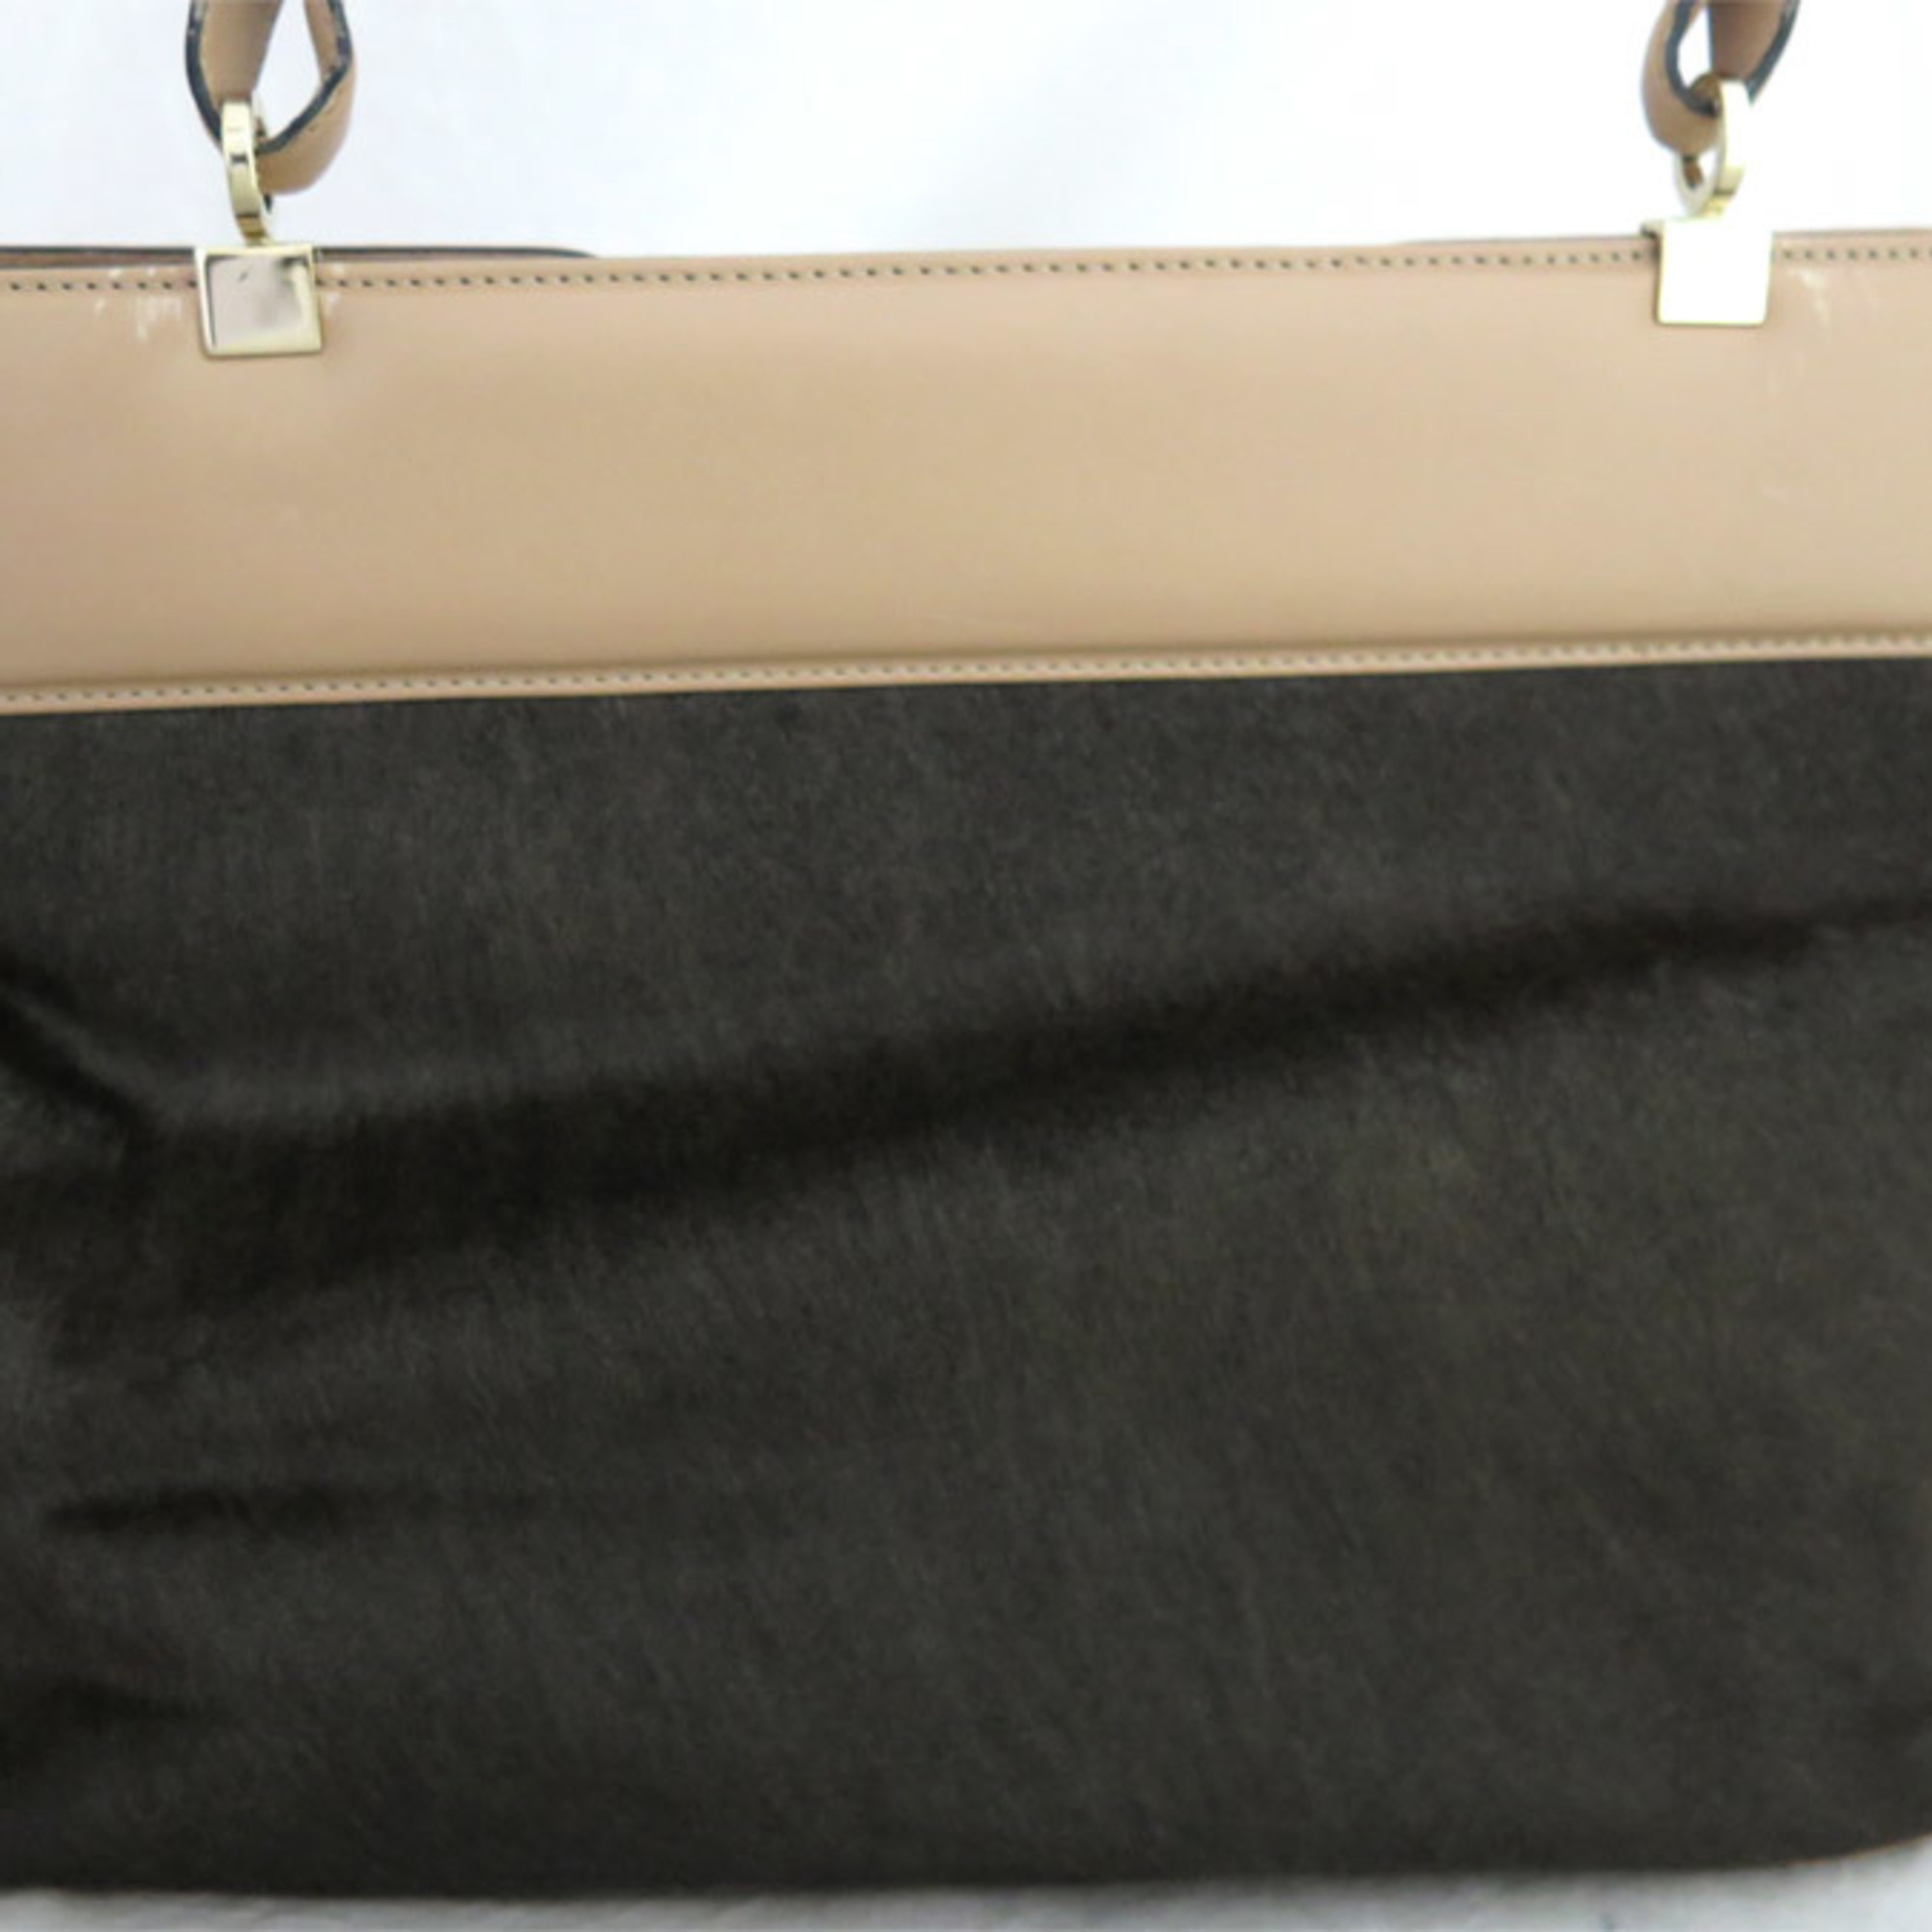 Bvlgari BVLGARI 2Way Bag Handbag Shoulder Isabella Rossellini Harako/Leather Dark Brown/Beige Women's